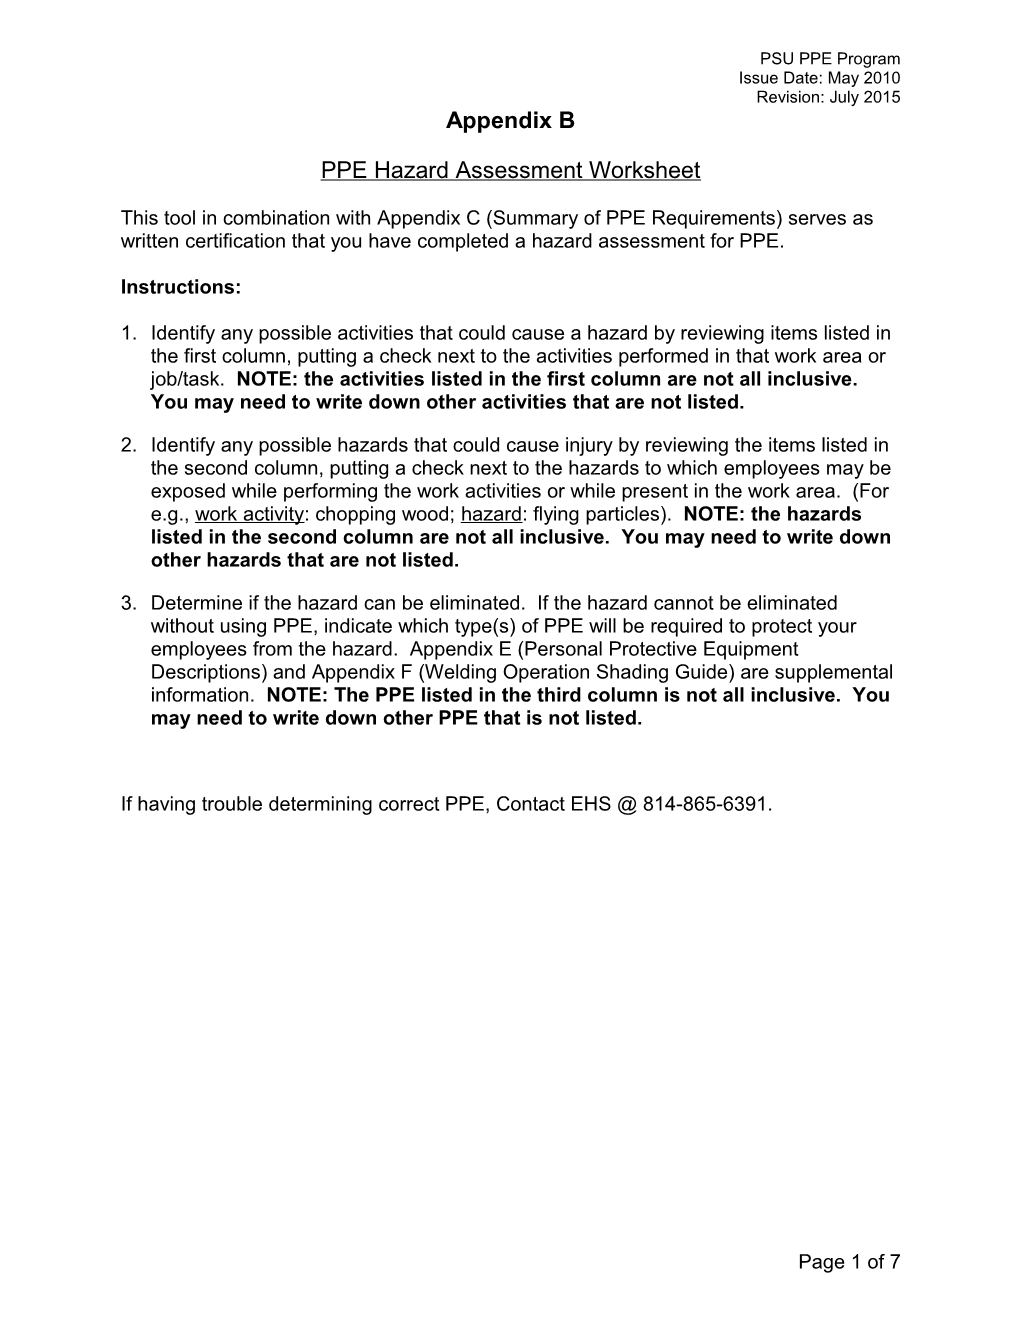 PPE Hazard Assessment Worksheet